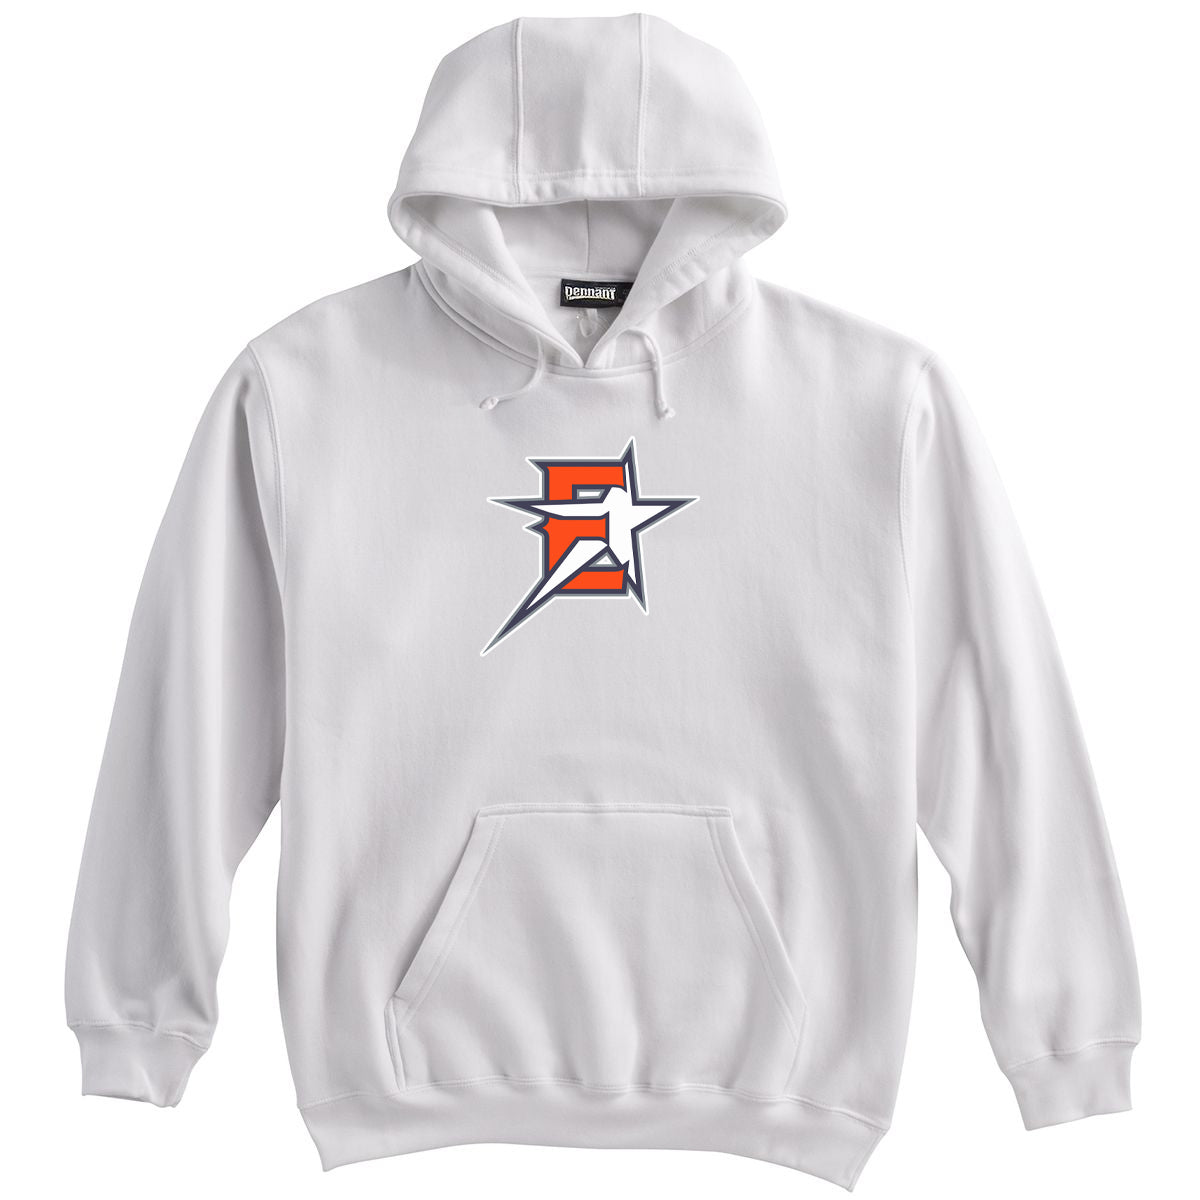 2019 Eastvale Girl's Softball Sweatshirt